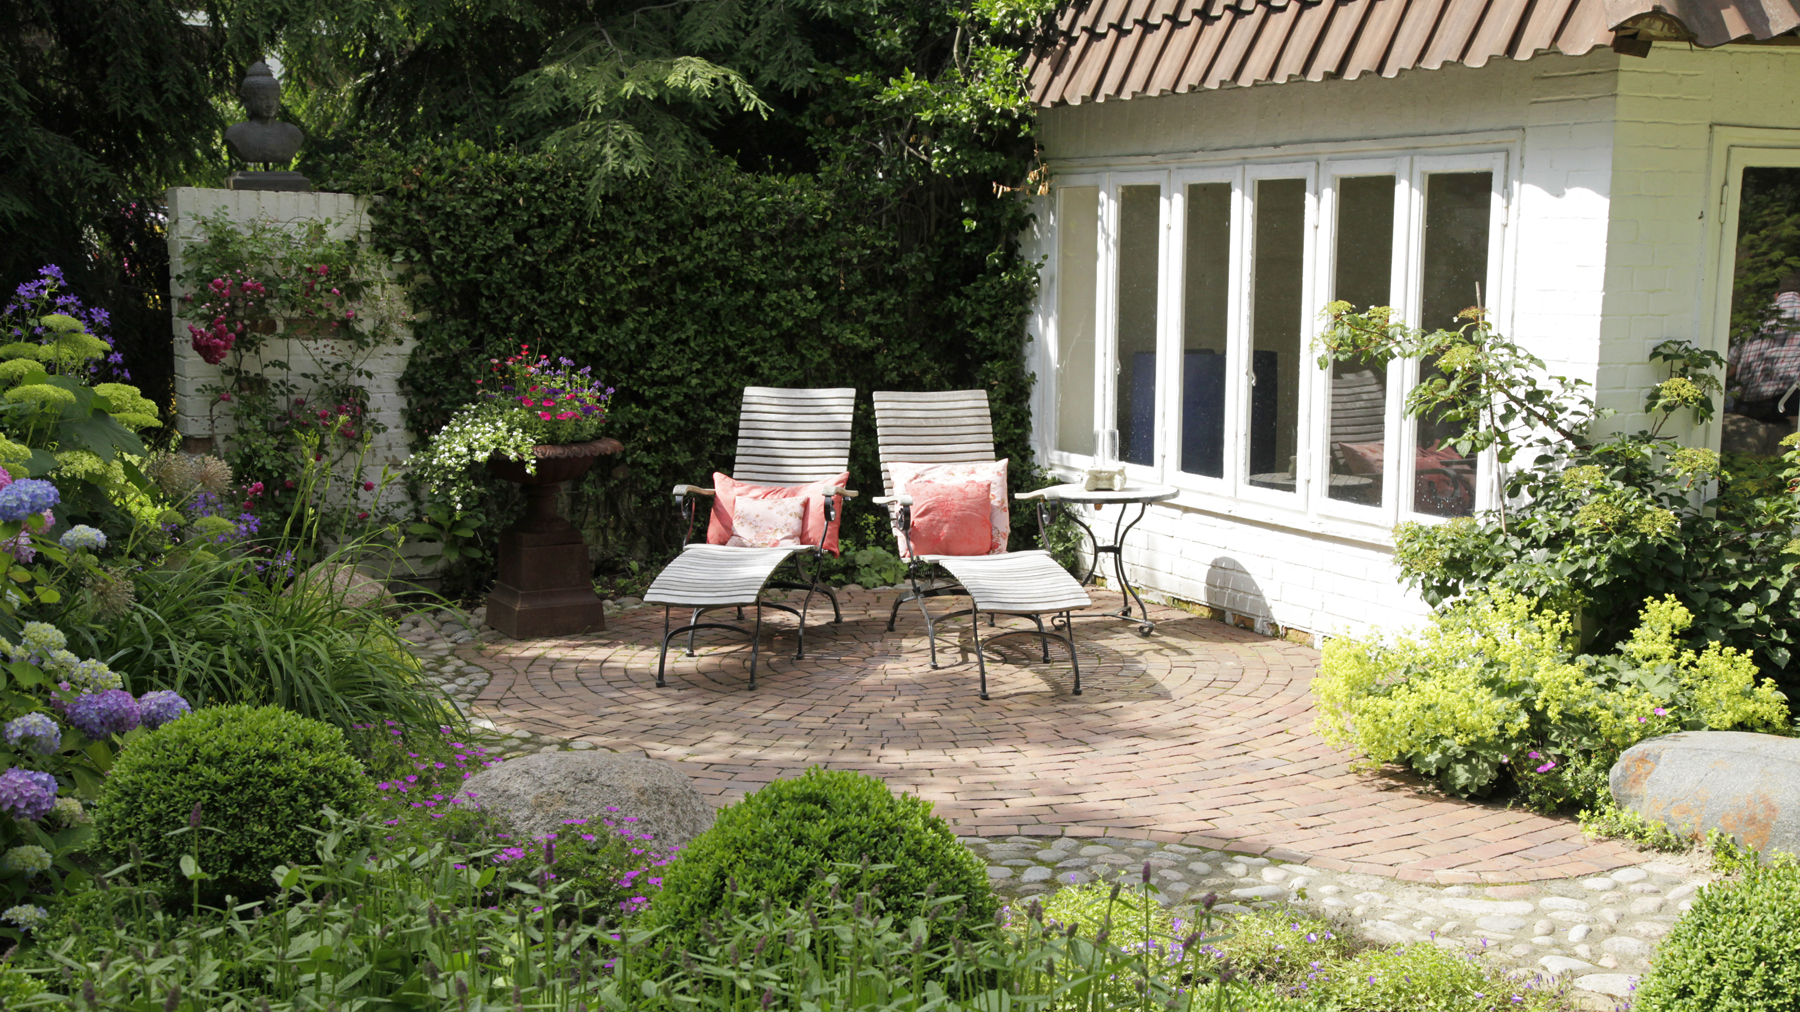 Schattiger Terrassenplatz mit Liegen und Bepflanzung am Gartenhaus